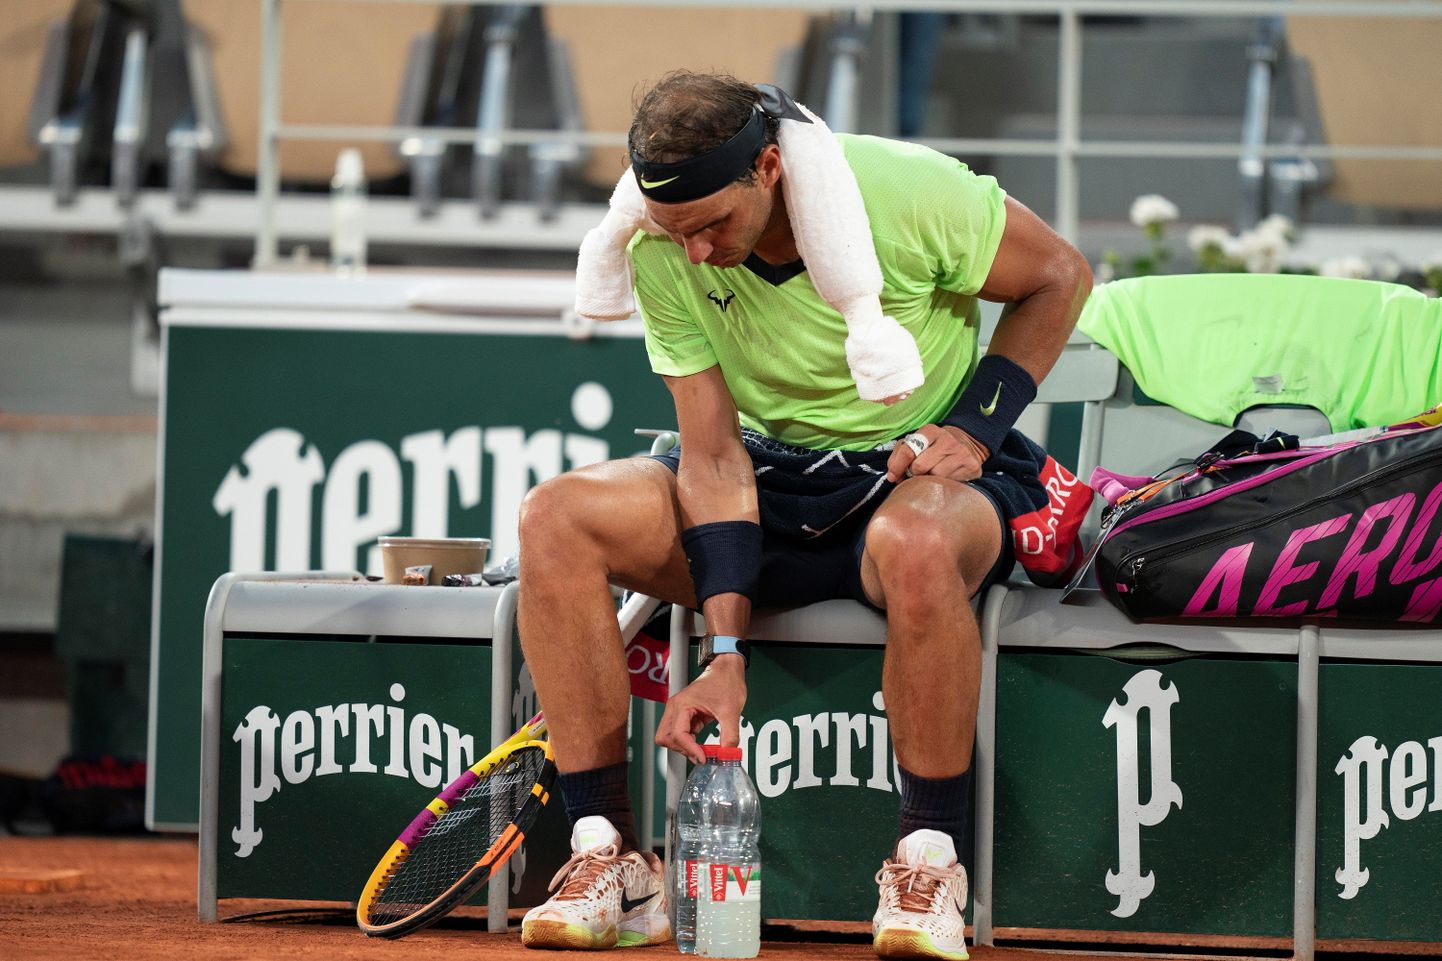 Hispaania tennisetäht Rafael Nadal Roland Garrosil joogipudeleid õigesse kohta sättimas.